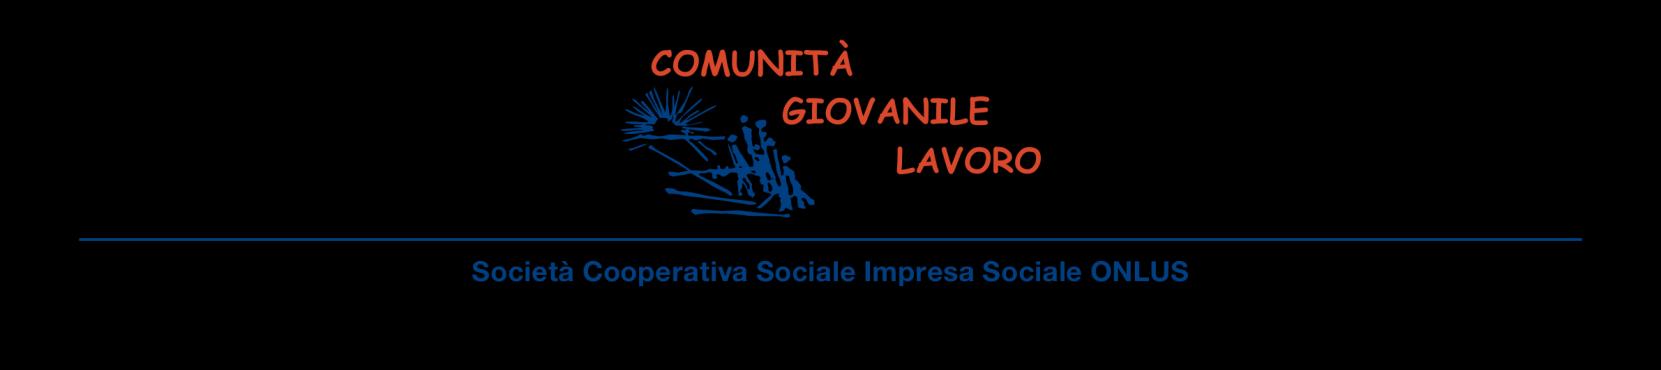 Regolamento Interno della Società Cooperativa Sociale Impresa Sociale ONLUS COMUNITA GIOVANILE LAVORO Premessa 1.